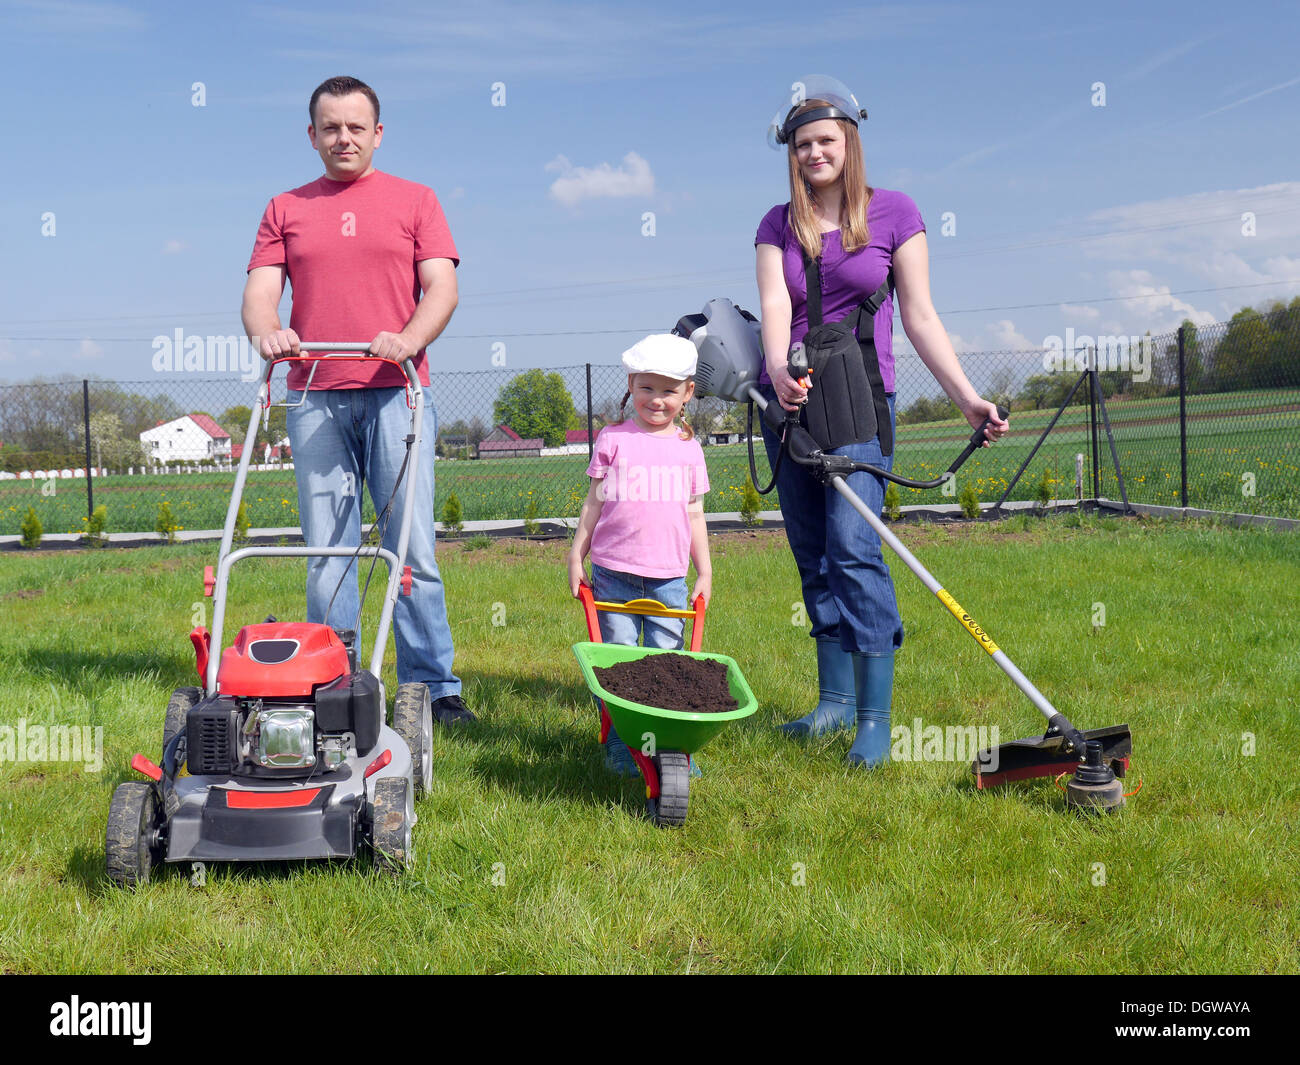 Vater stand mit Power Rasenmäher, Mutter hält Trimmgerät und ihre niedlichen Kind posiert mit grünen Karren voller Erde Stockfoto